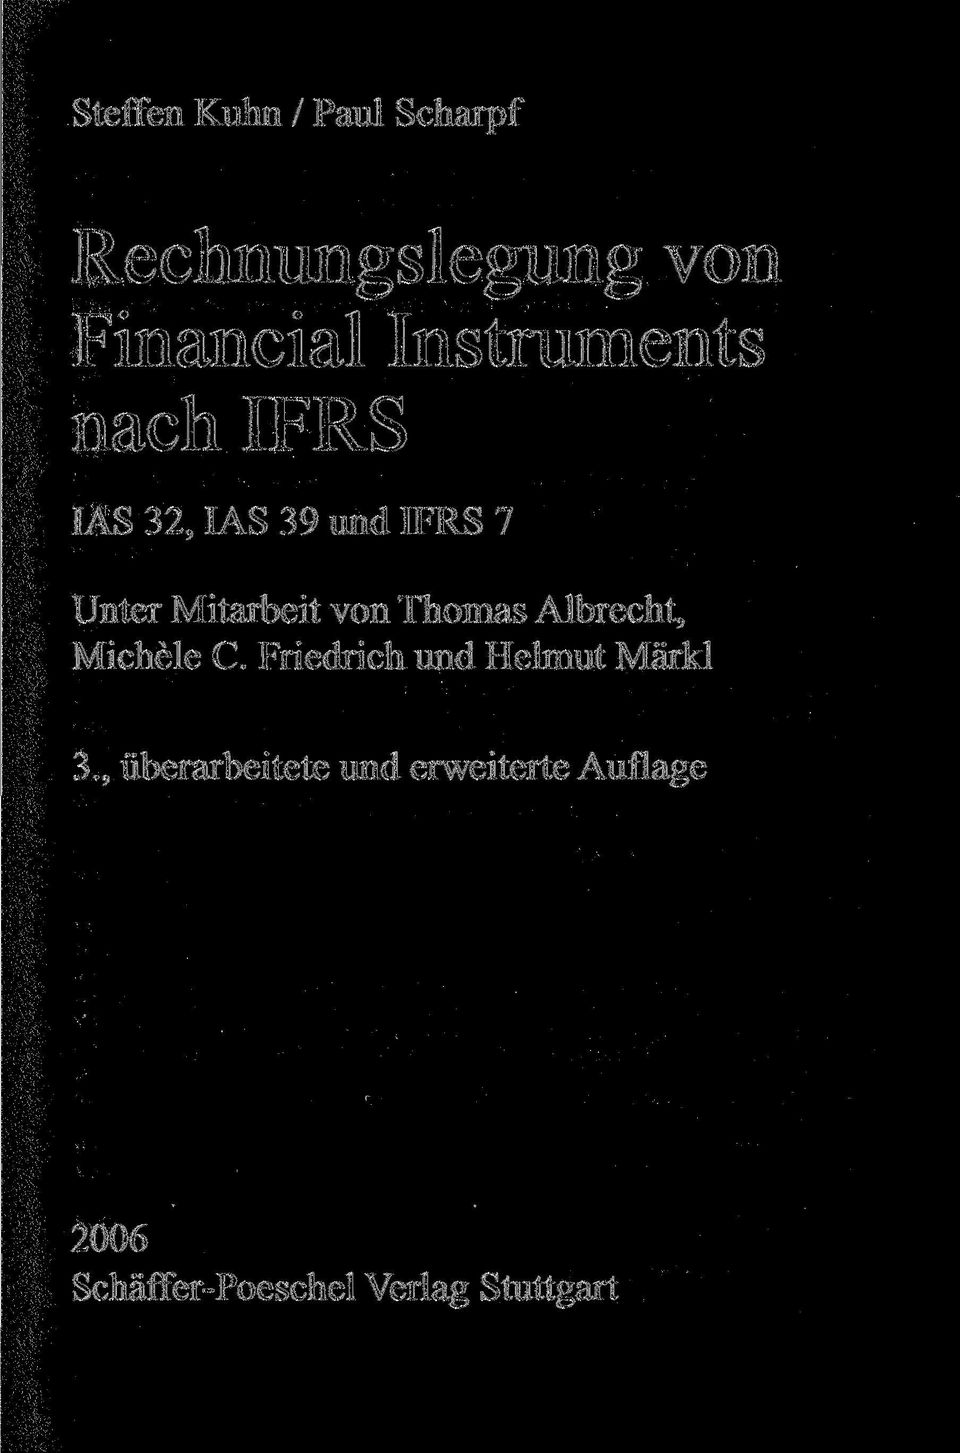 von Thomas Albrecht, Michele C. Friedrich und Helmut Märkl 3.